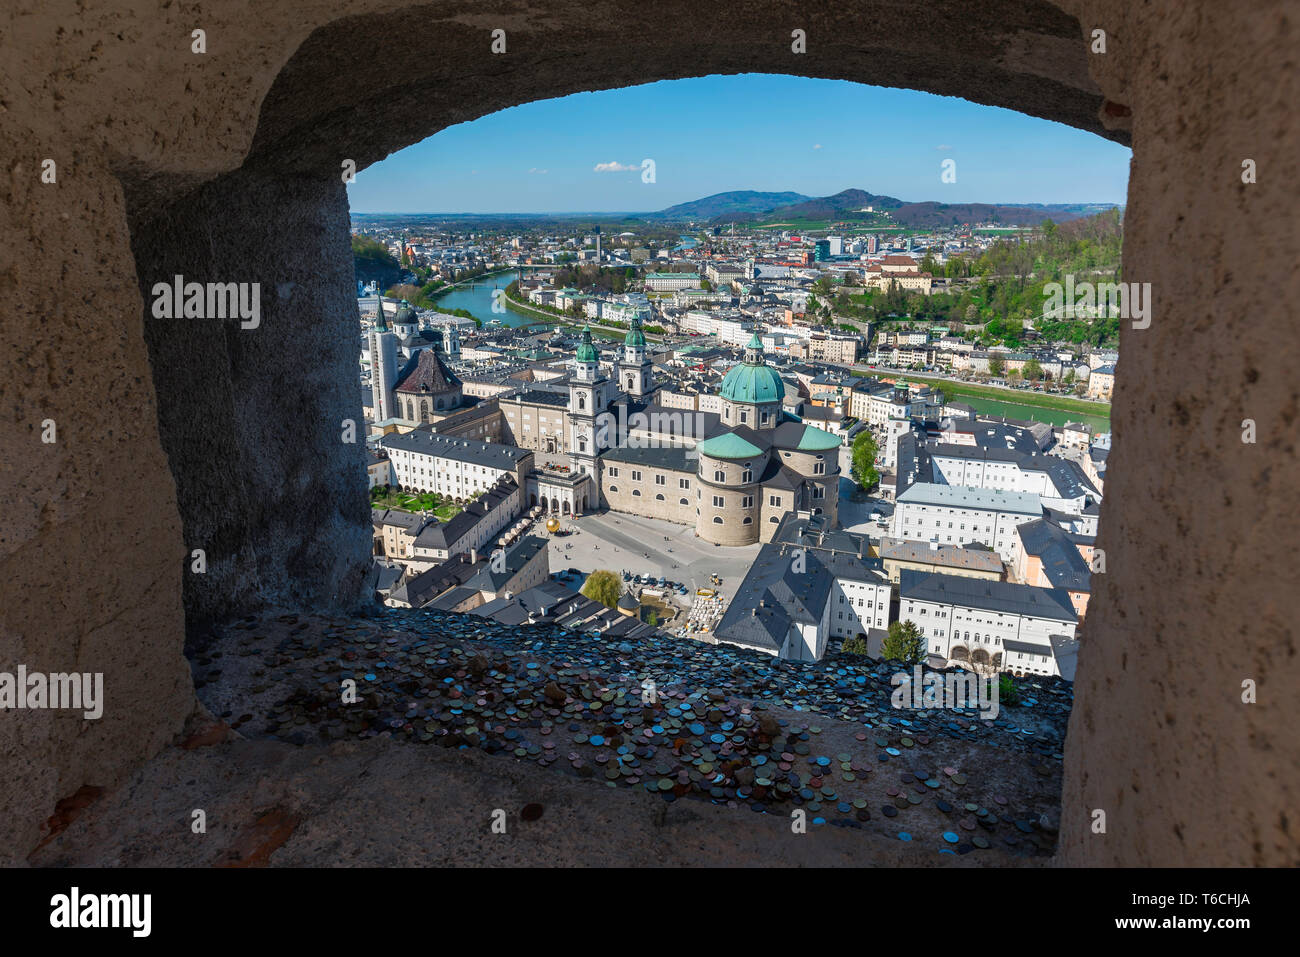 Stadt Salzburg, Blick auf die Altstadt von Salzburg aus einer Kanone Gerichtsbezirk in die Mauer der Festung Hohensalzburg, Österreich. Stockfoto